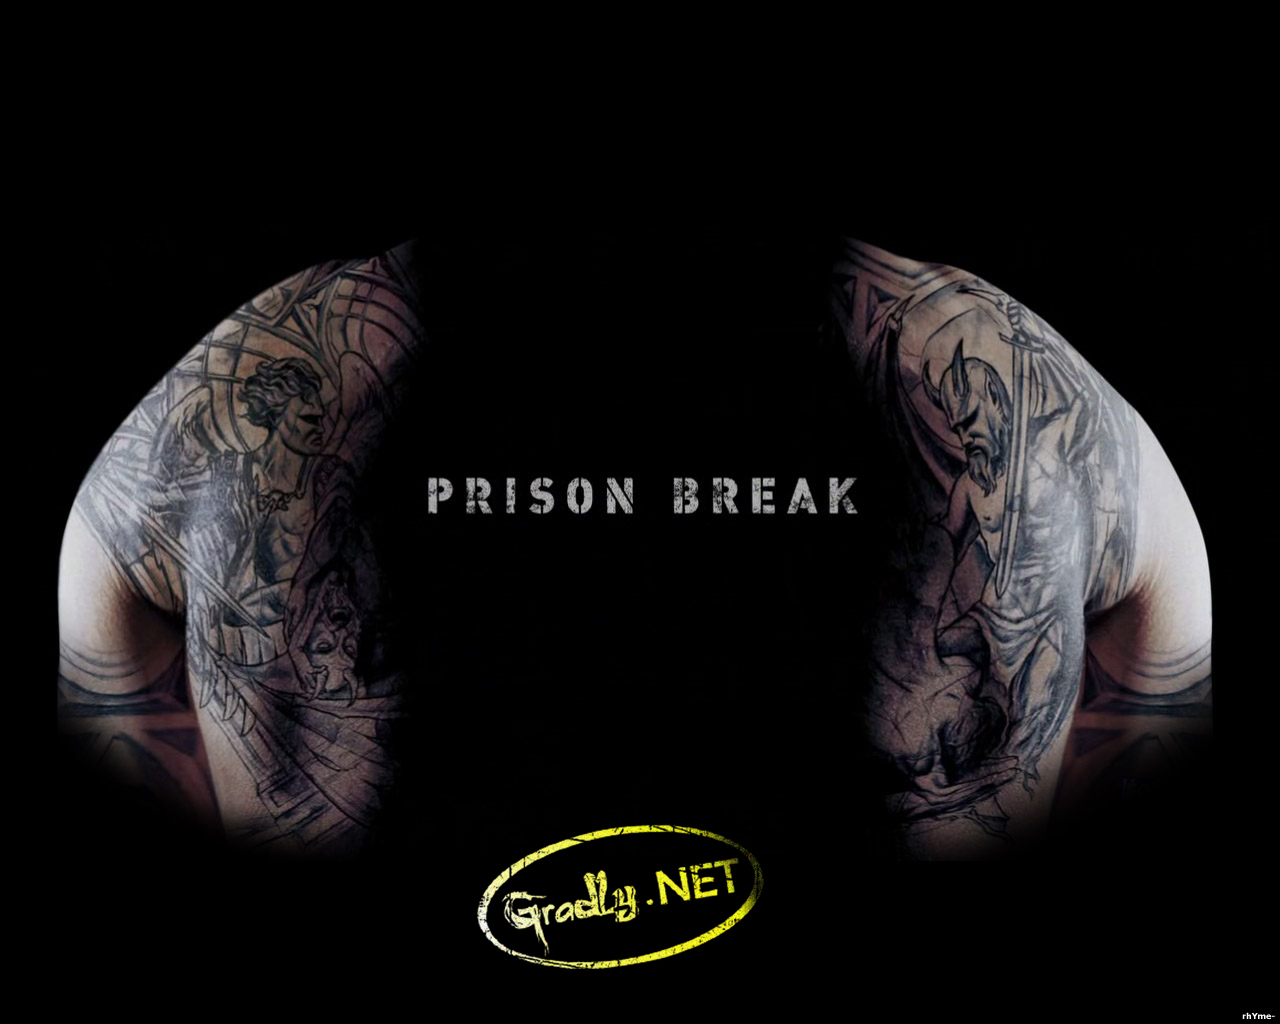 Free 3D Wallpapers Download Prison break wallpapers, prison break